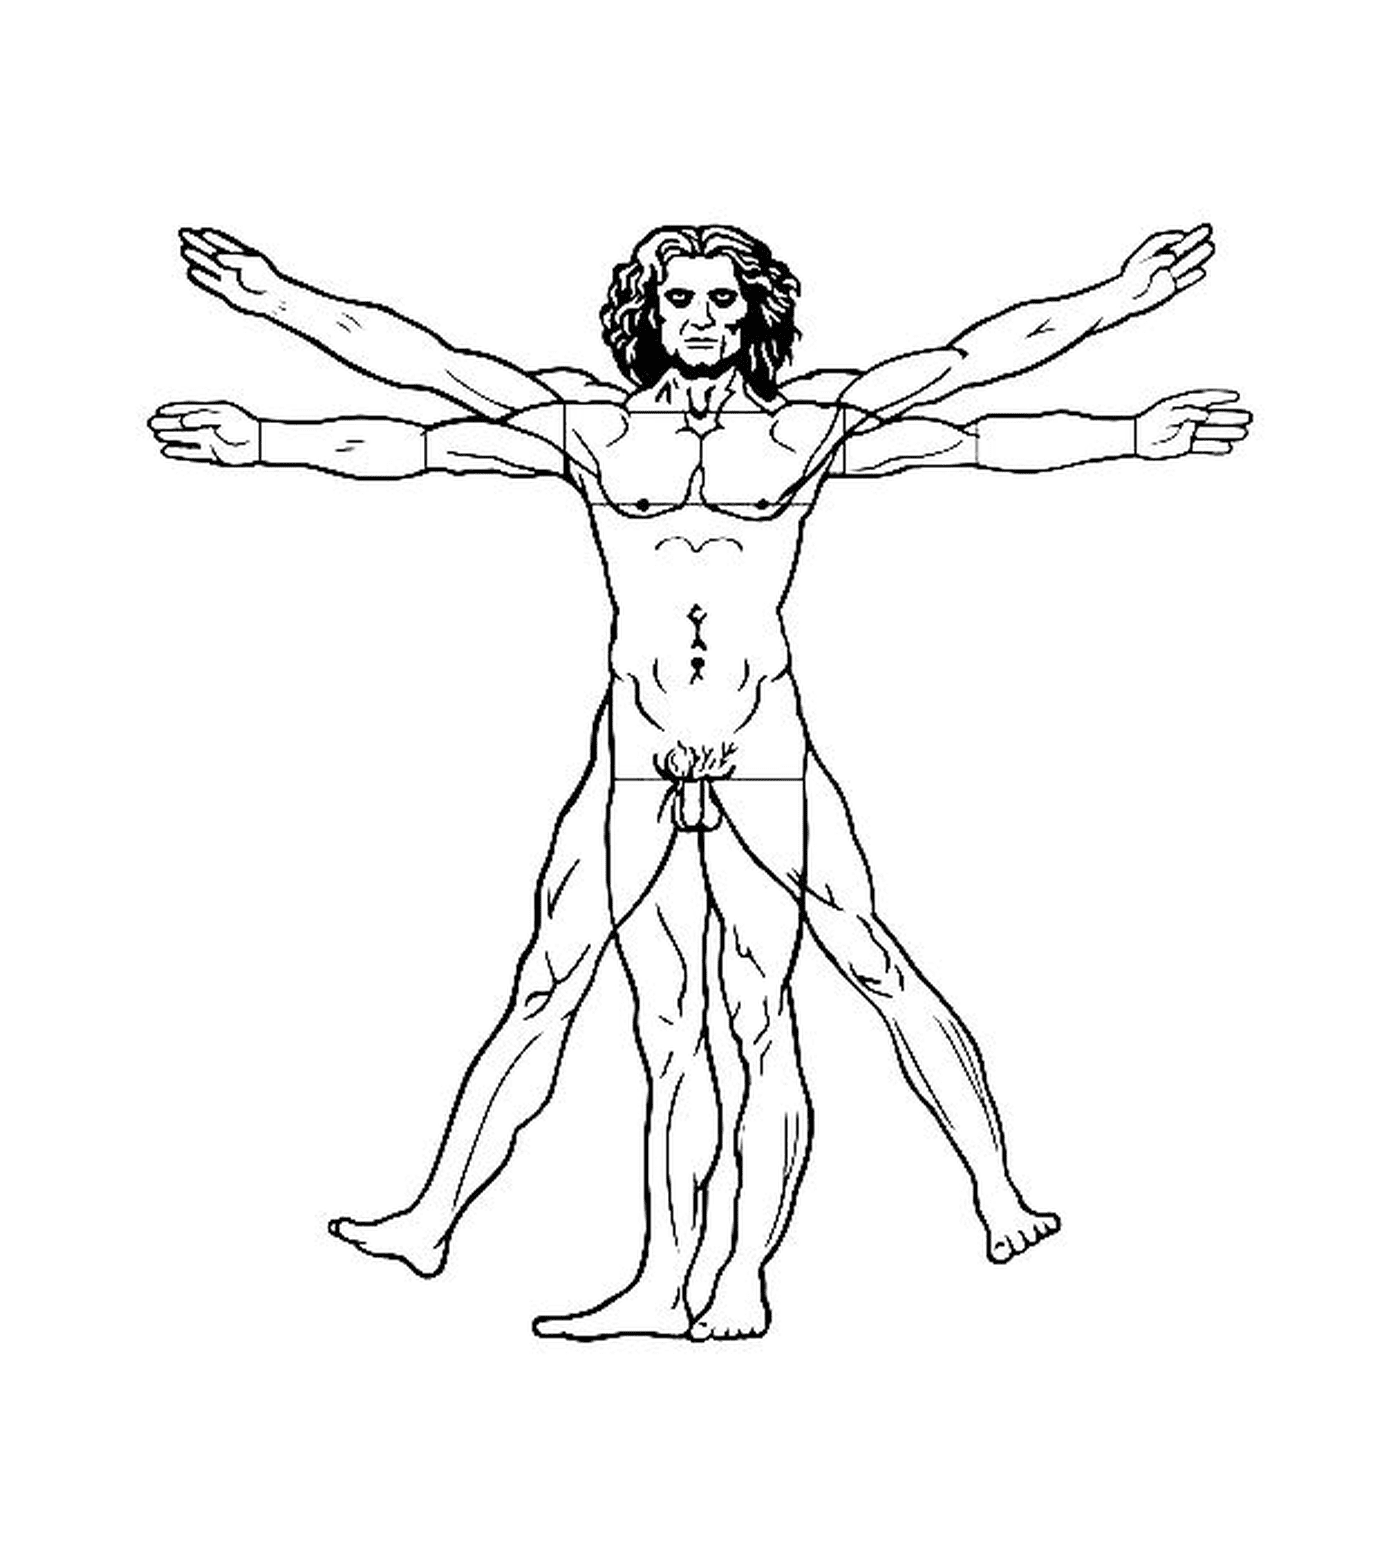  Человек с руками растянутыми, согласно Витрувианскому Человеку Леонардо да Винчи 